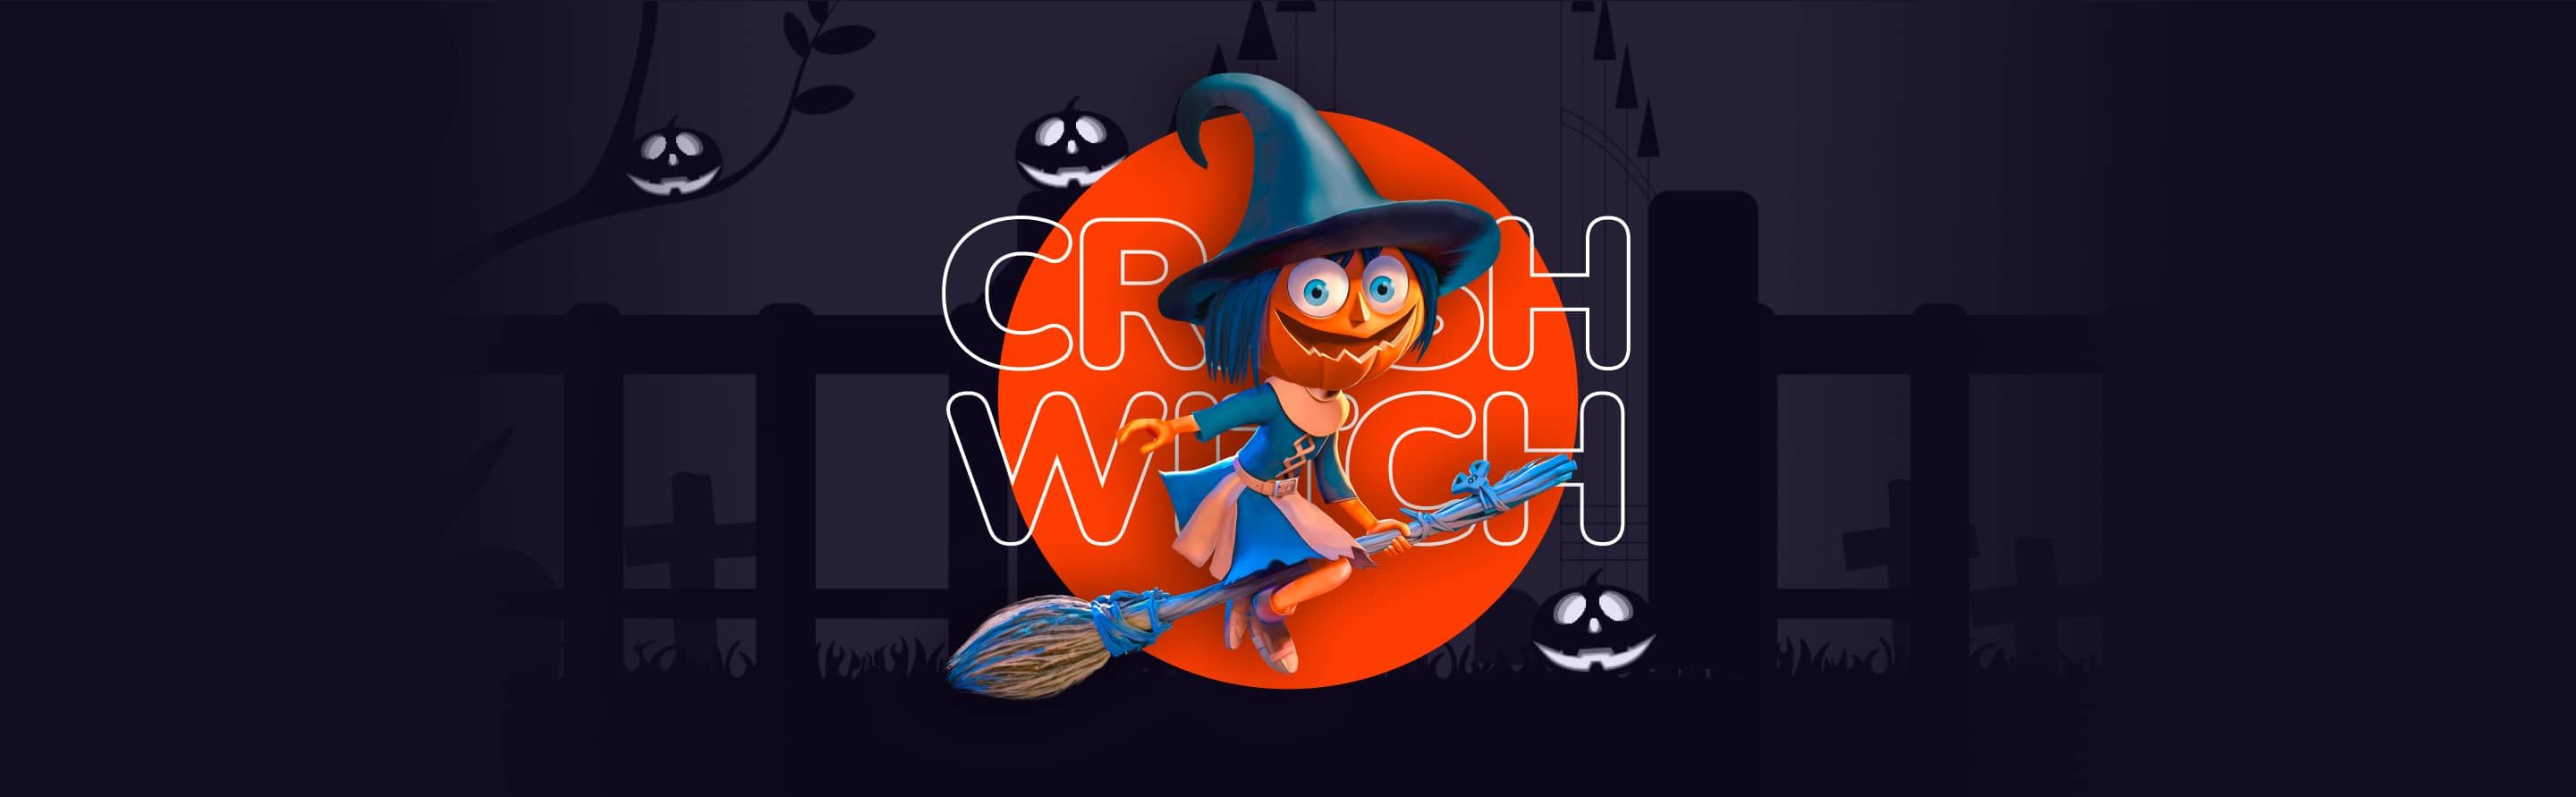 Crash Witch | Gameplay Banner